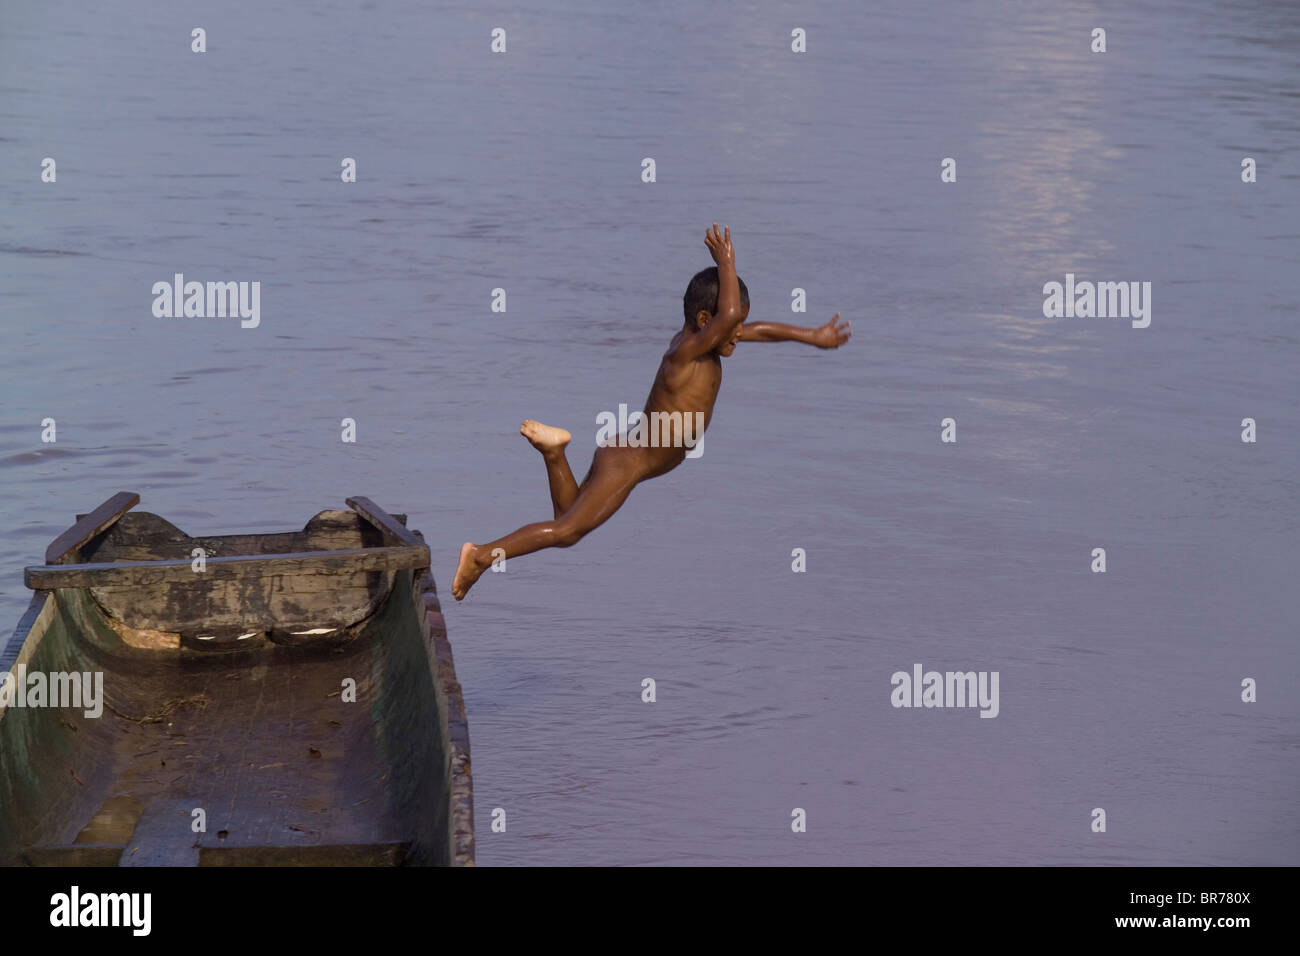 Ein kleiner Junge springt aus einem traditionellen Einbaum Miskito in Rio Coco in Nicaragua Krin Krin. Stockfoto